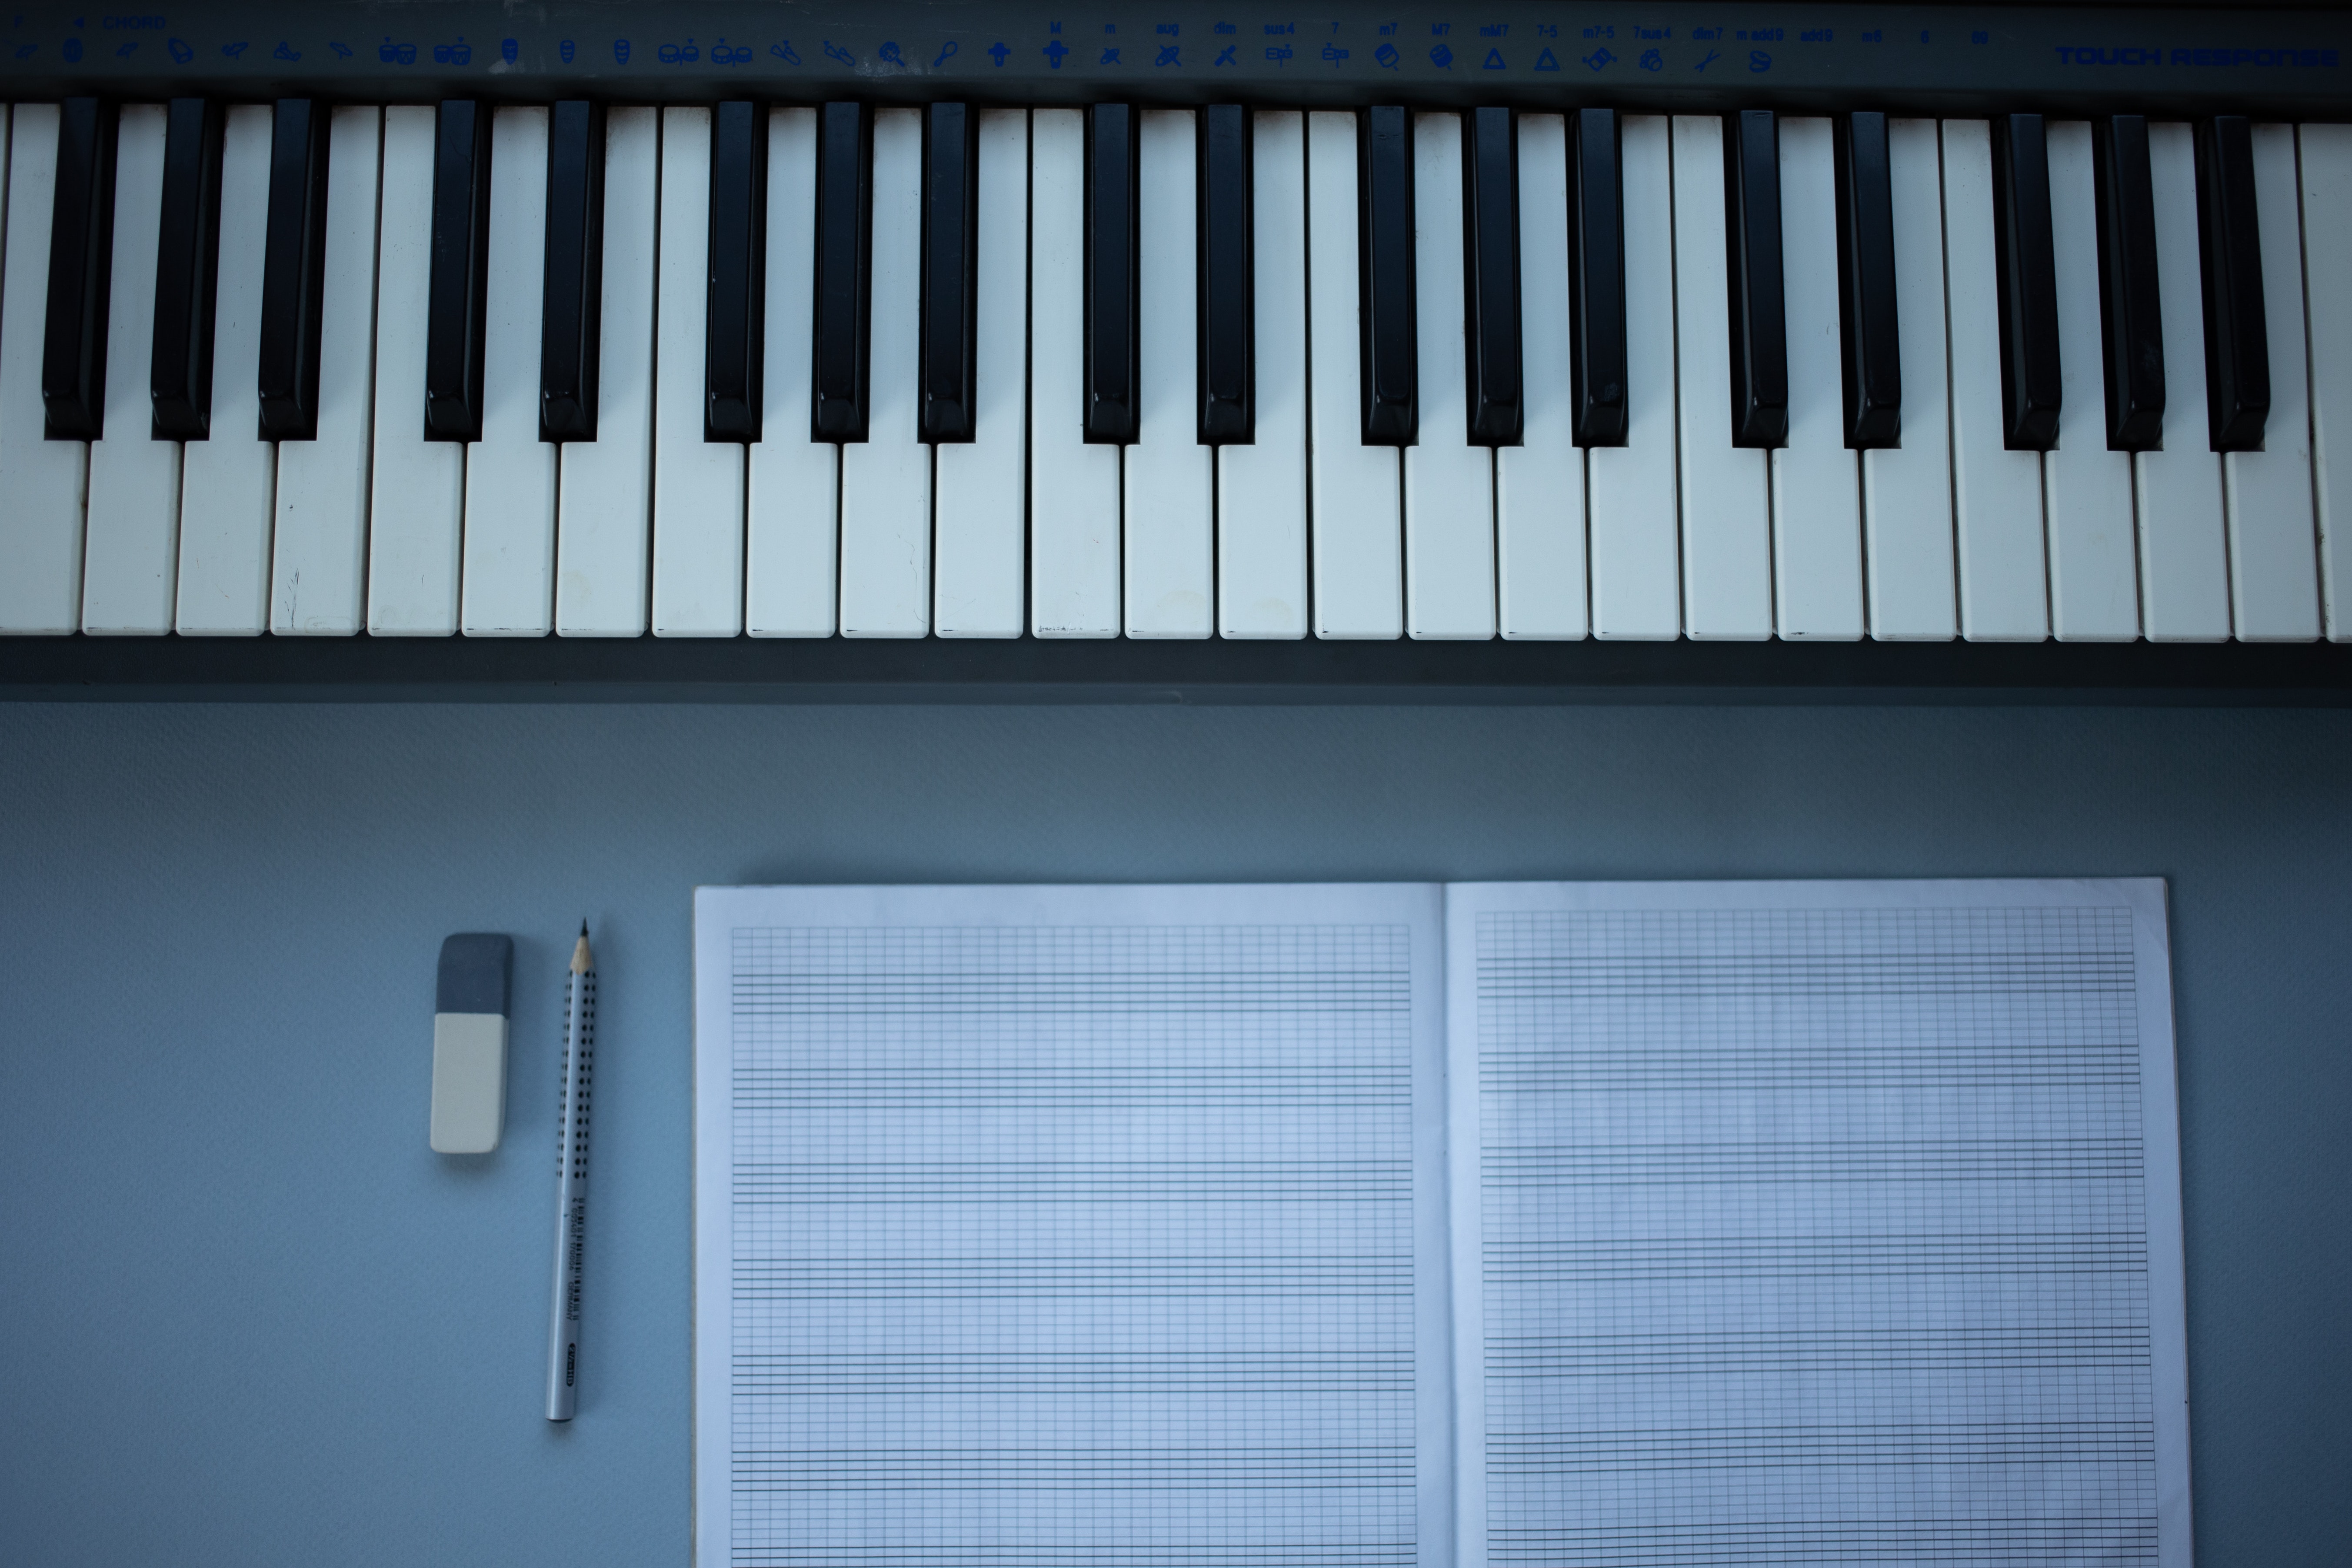 Comment et pourquoi utiliser un métronome au piano ?